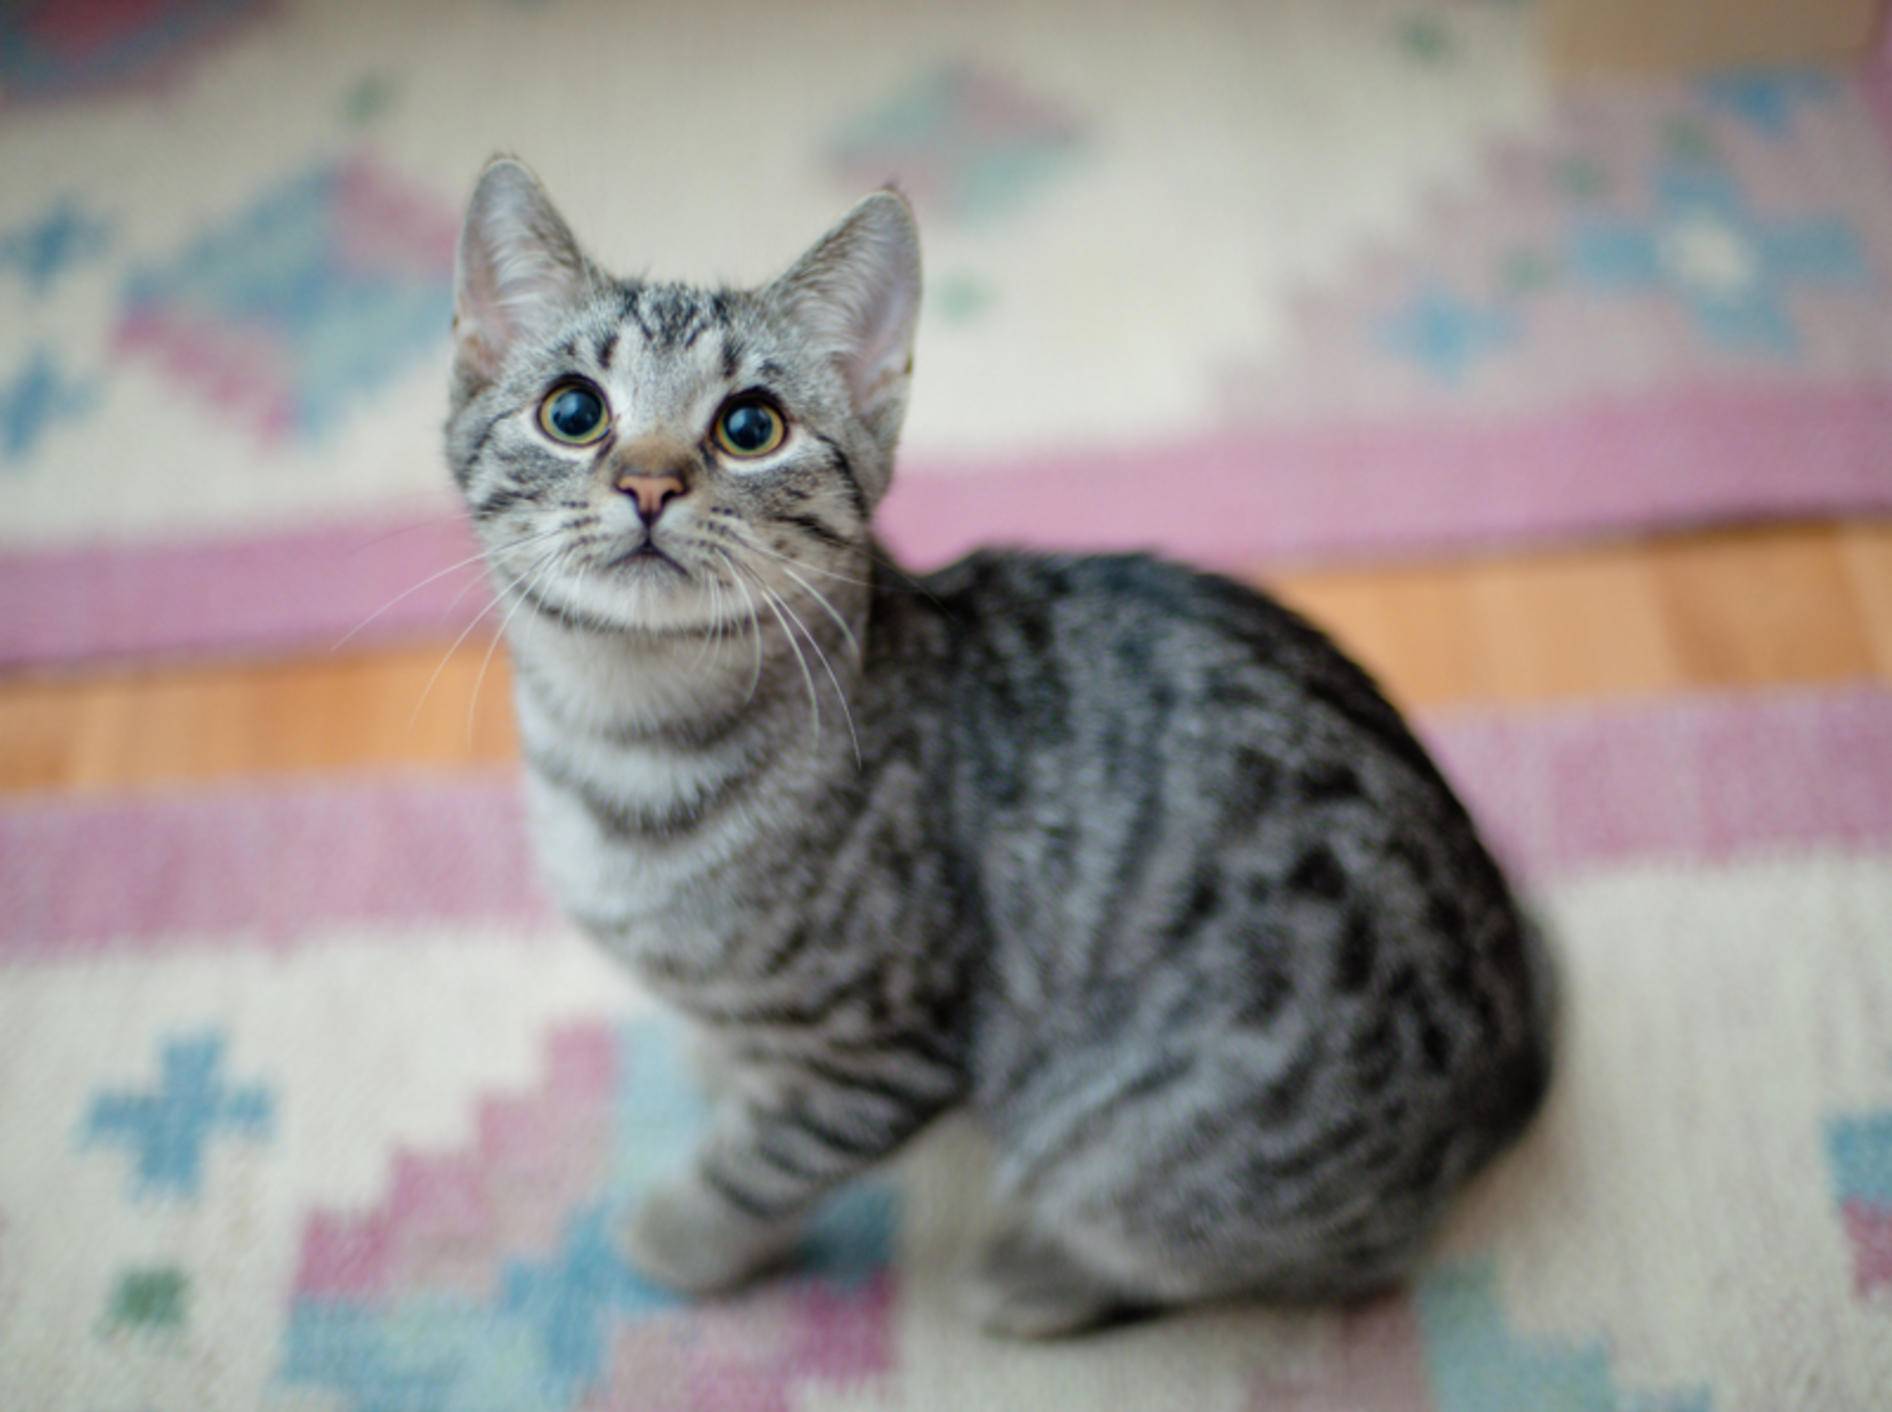 "Nicht schimpfen, ich hab nicht mit Absicht auf den Teppich gepinkelt", scheint diese Tabby-Katze sagen zu wollen – Shutterstock / AttilaVarga